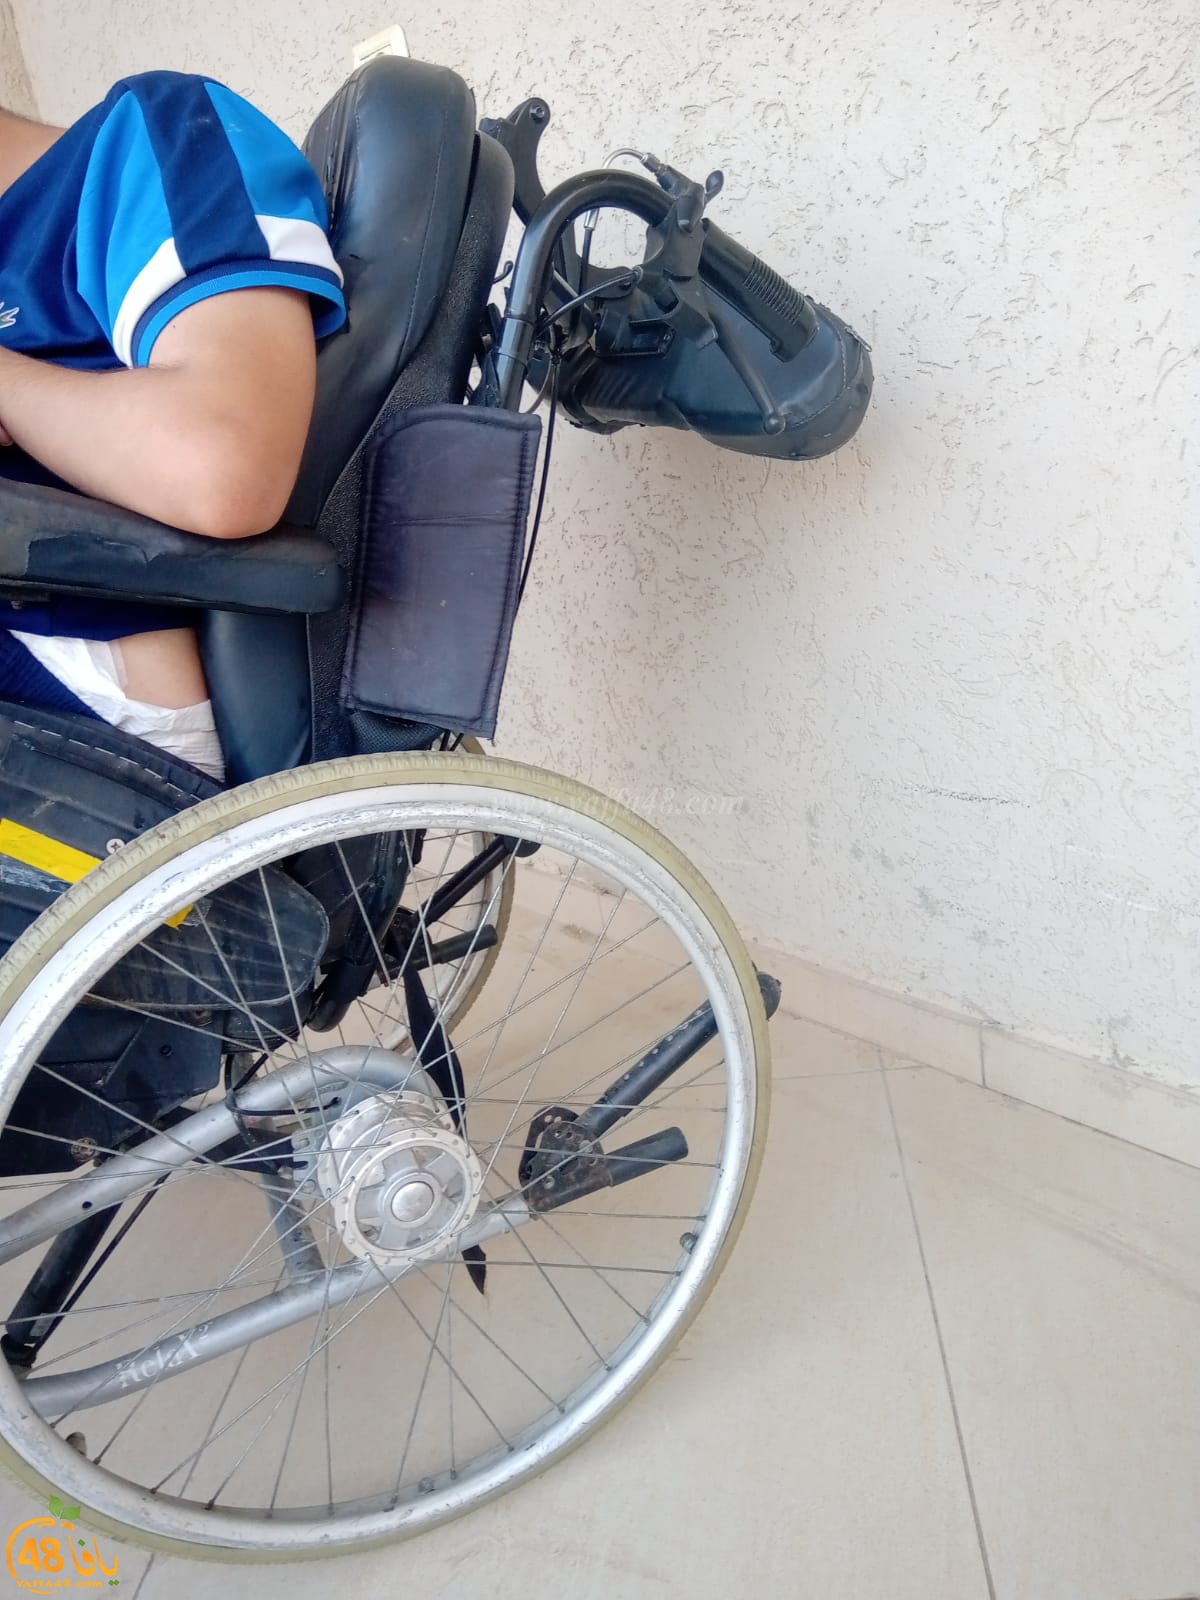 بعد النشر في يافا 48 - يافاوي يتبرّع بكرسي متحرّك للشاب المقعد يوسف حامد من اللد